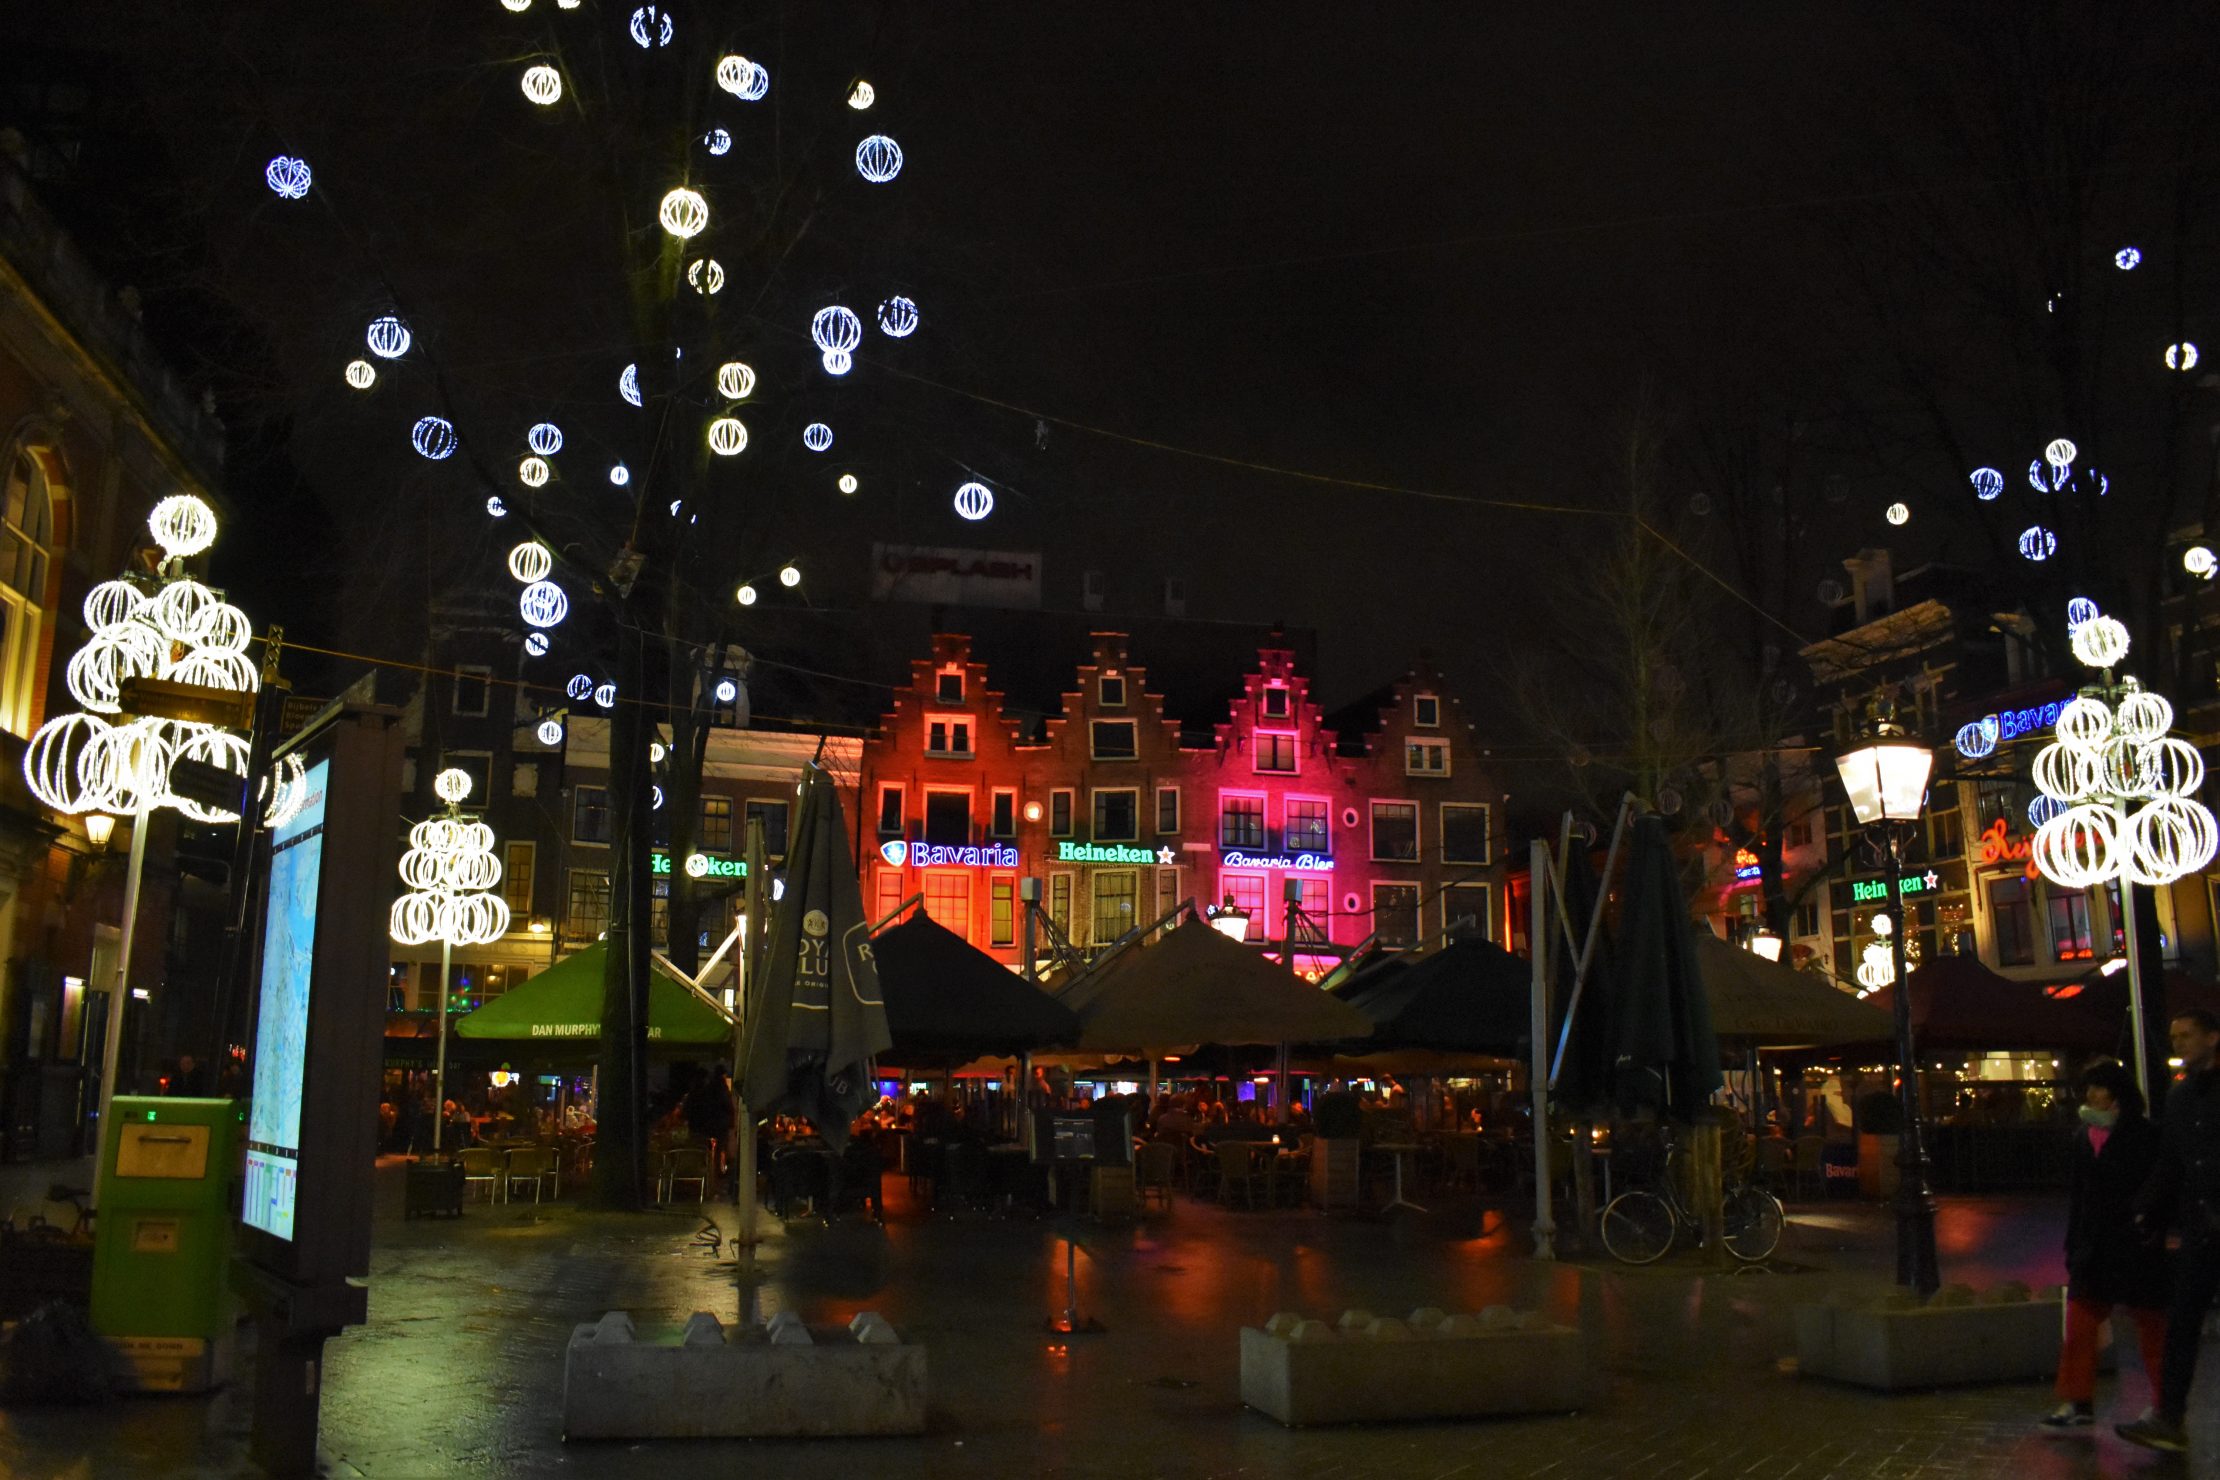 Leidseplein - one of main nightlife areas of Amsterdam